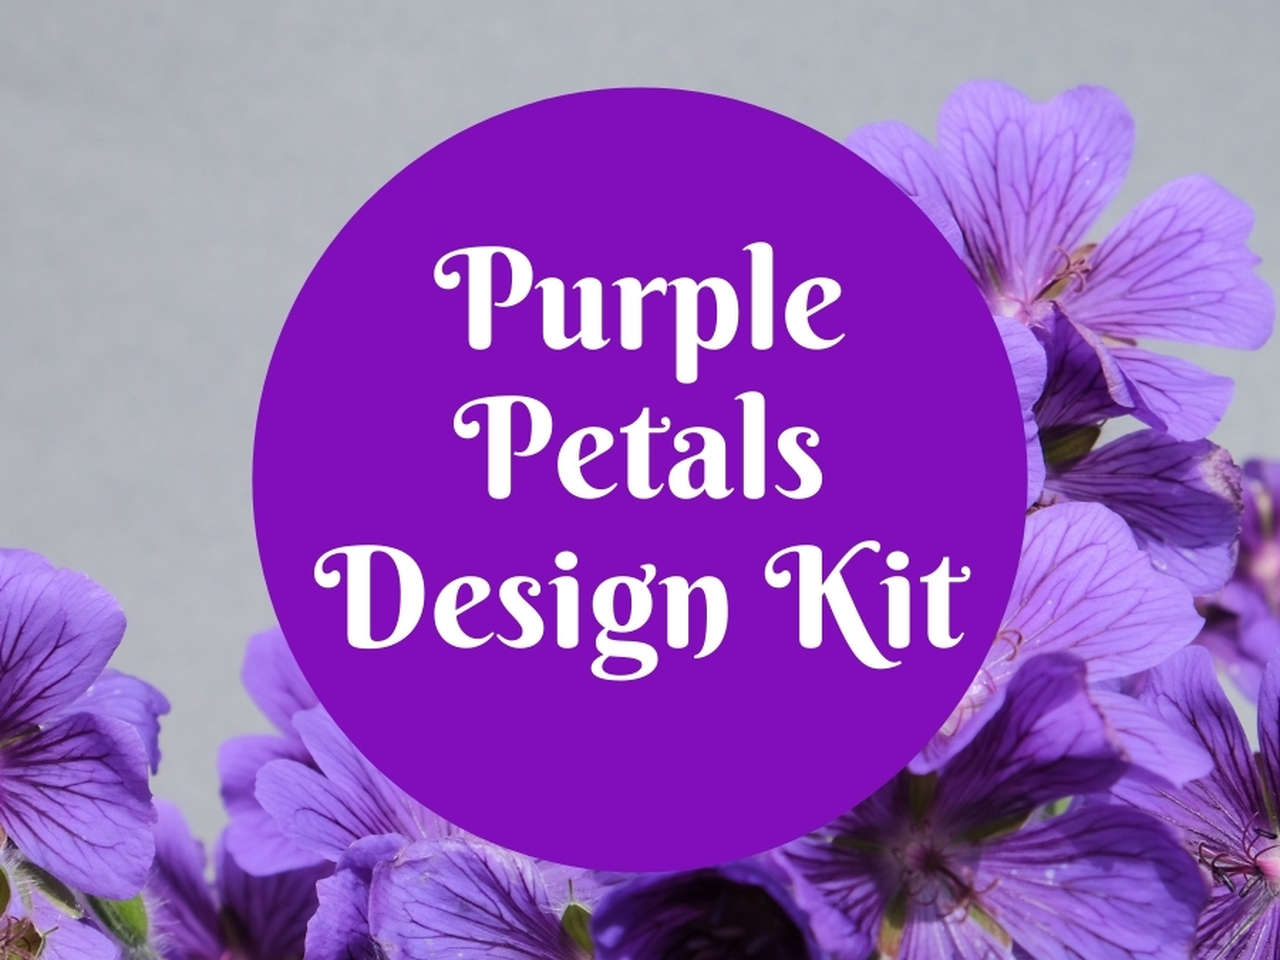 Shop our Design Kits!